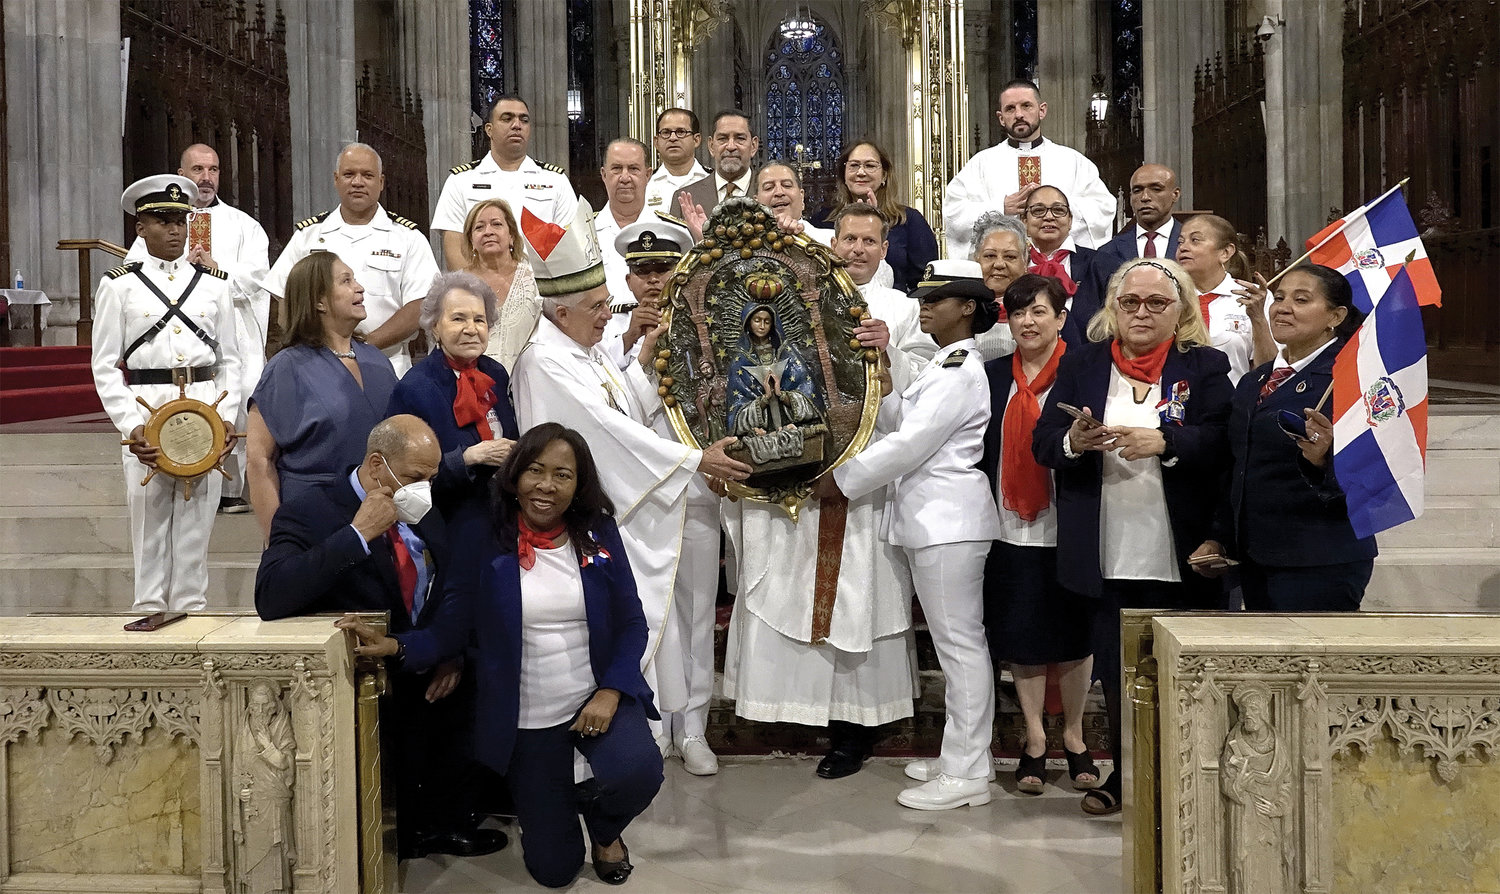 Grupales que se tomaron con el obispo, el padre Enrique Salvo, rector de la catedral, los infantes de marina y miembros del Comité arquidiocesano de Nuestra Señora de la Altagracia.